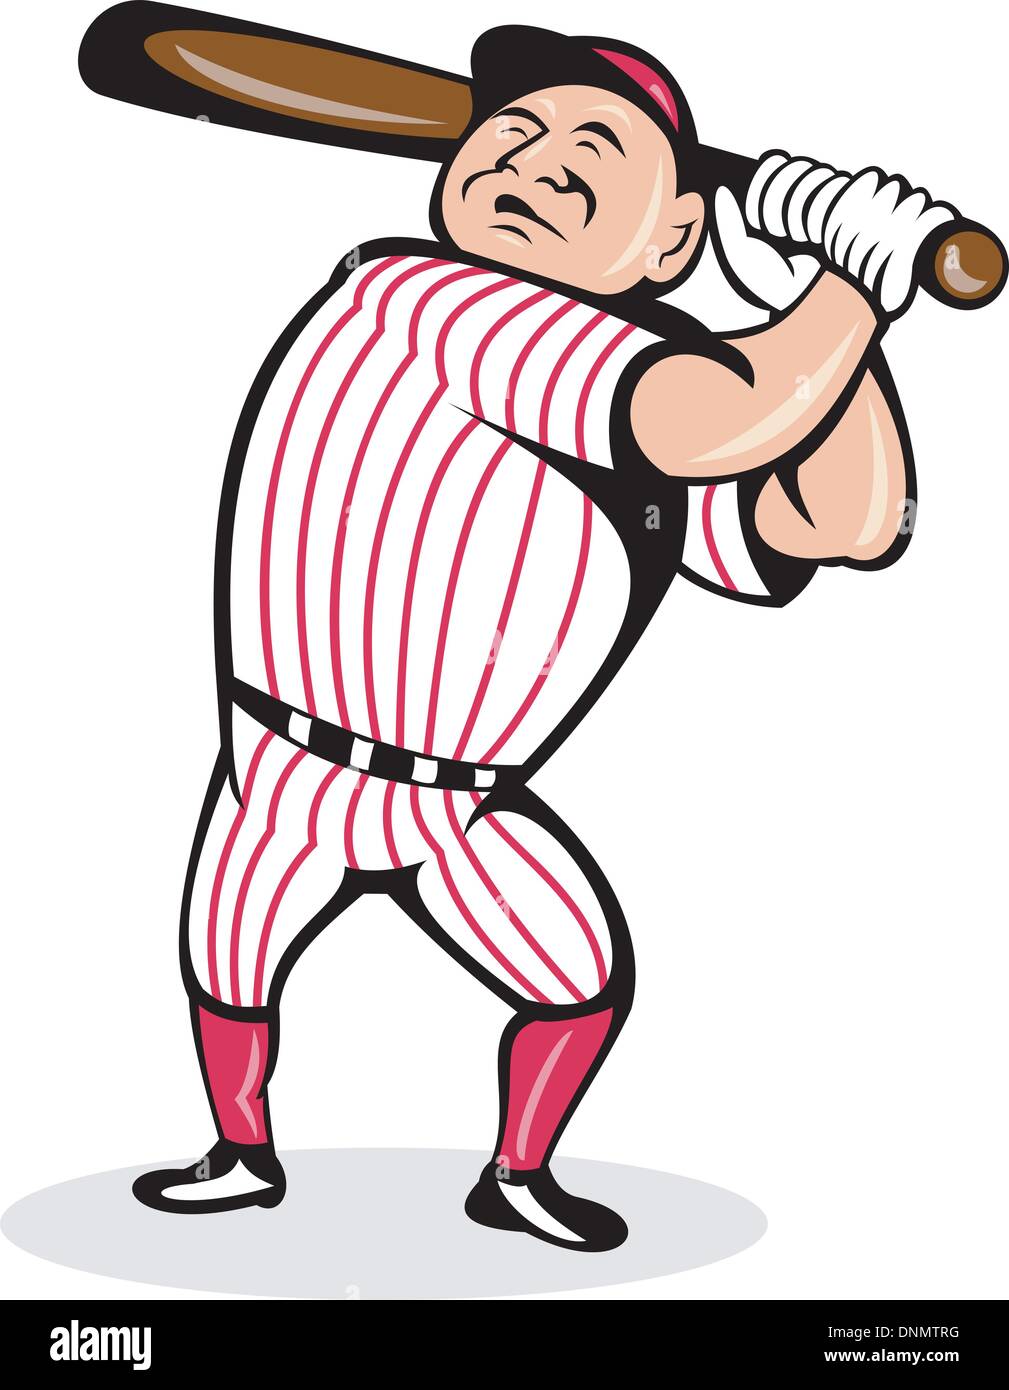 Illustration d'un dessin animé baseball player swinging un bat Illustration de Vecteur